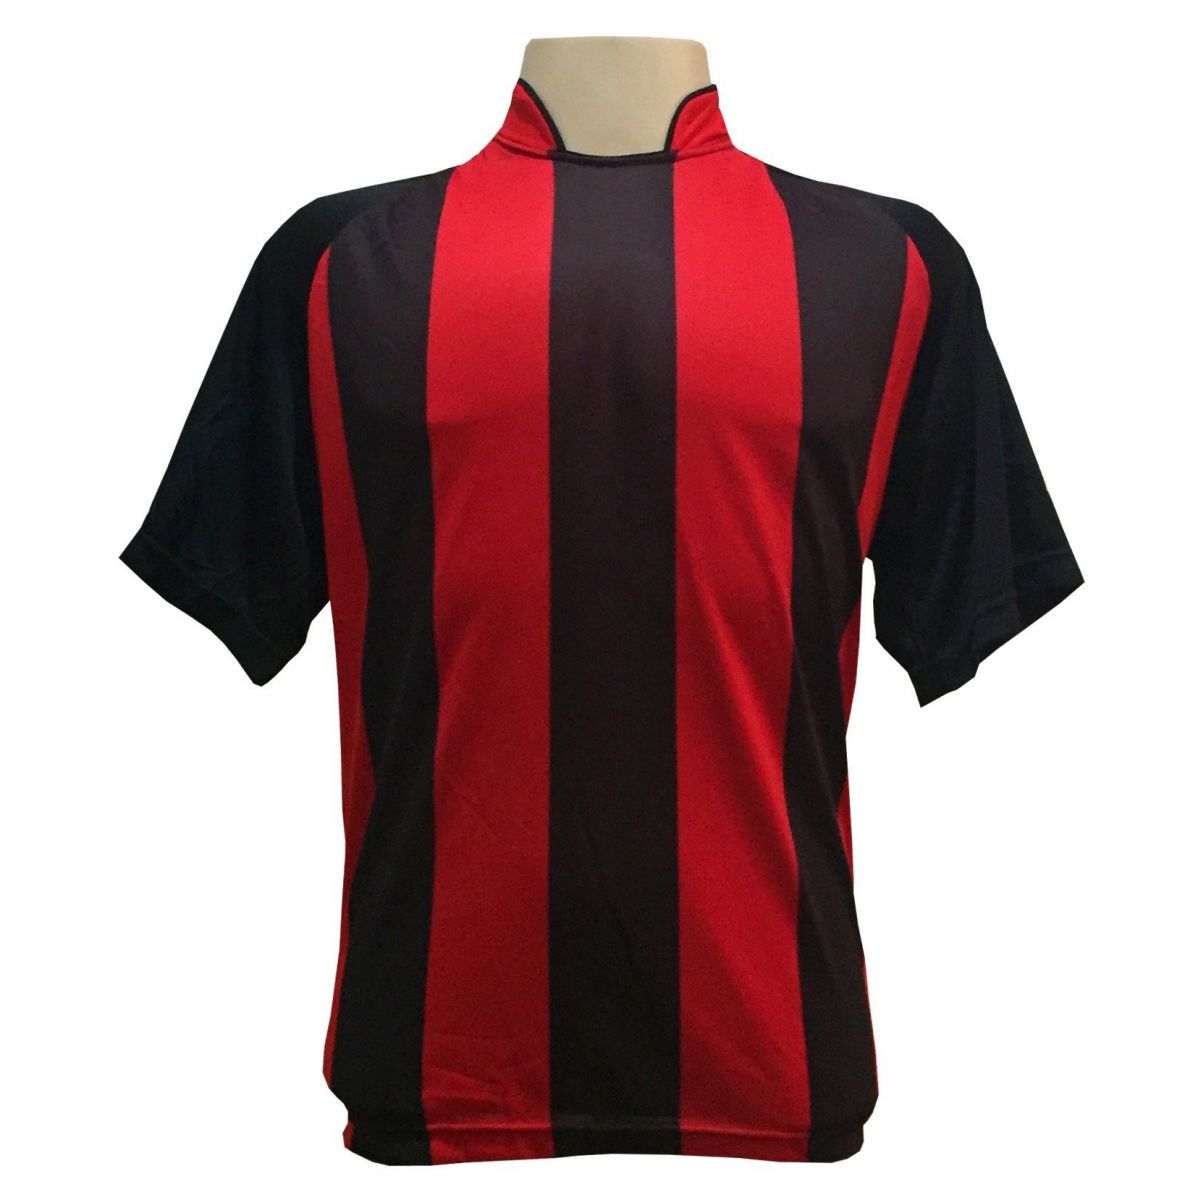 Uniforme Esportivo com 18 camisas modelo Milan Preto/Vermelho + 18 calções modelo Madrid + 1 Goleiro + Brindes